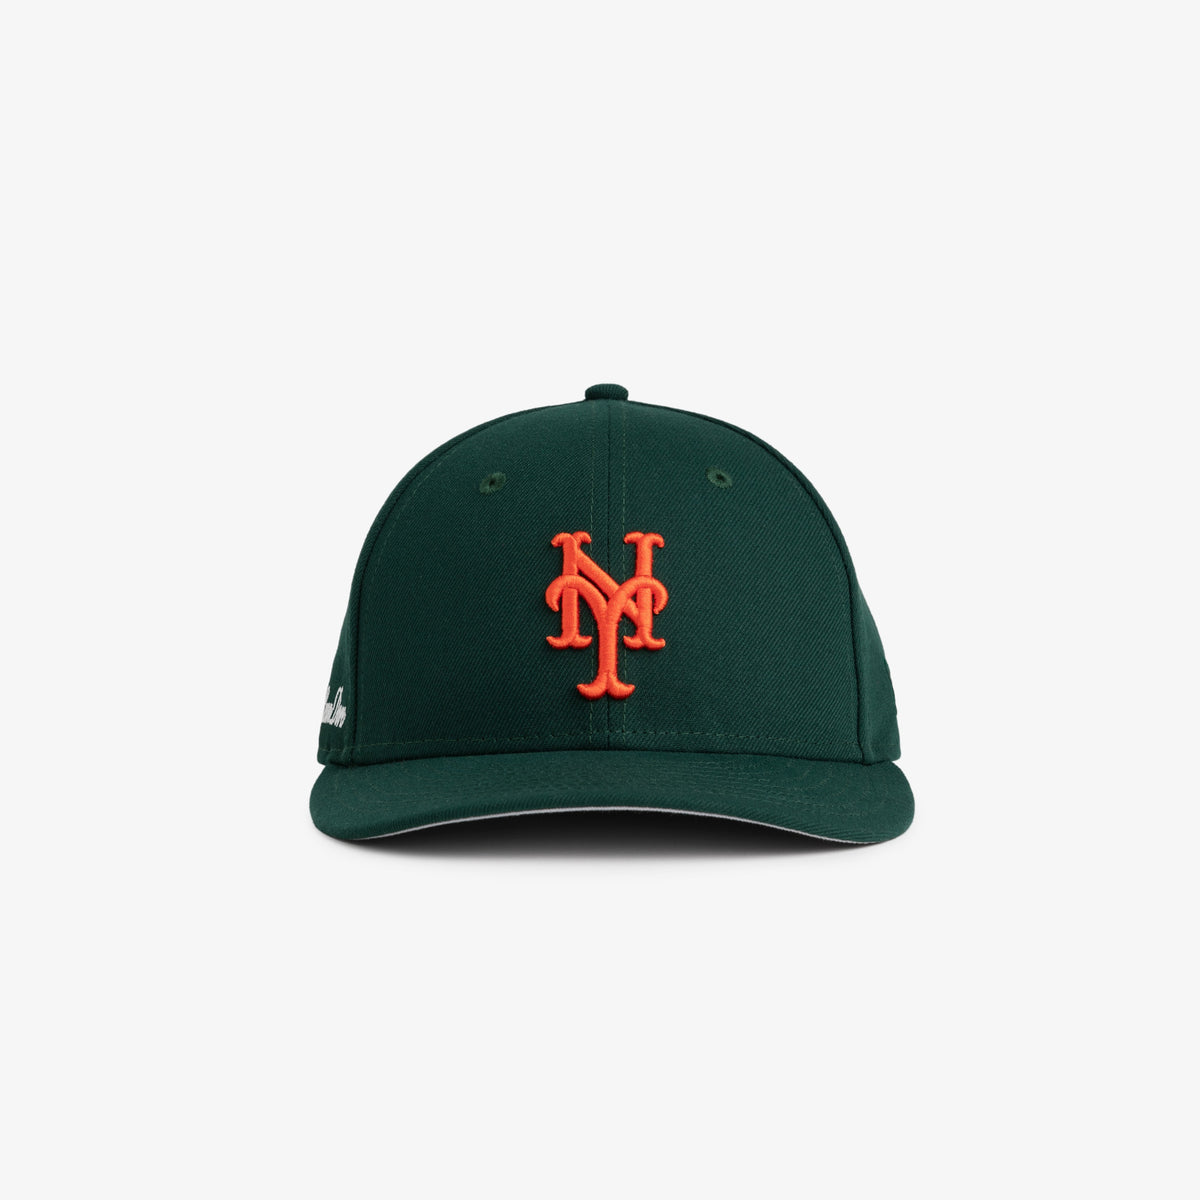 ALD / New Era Mets Hat at AimeLeonDore.com